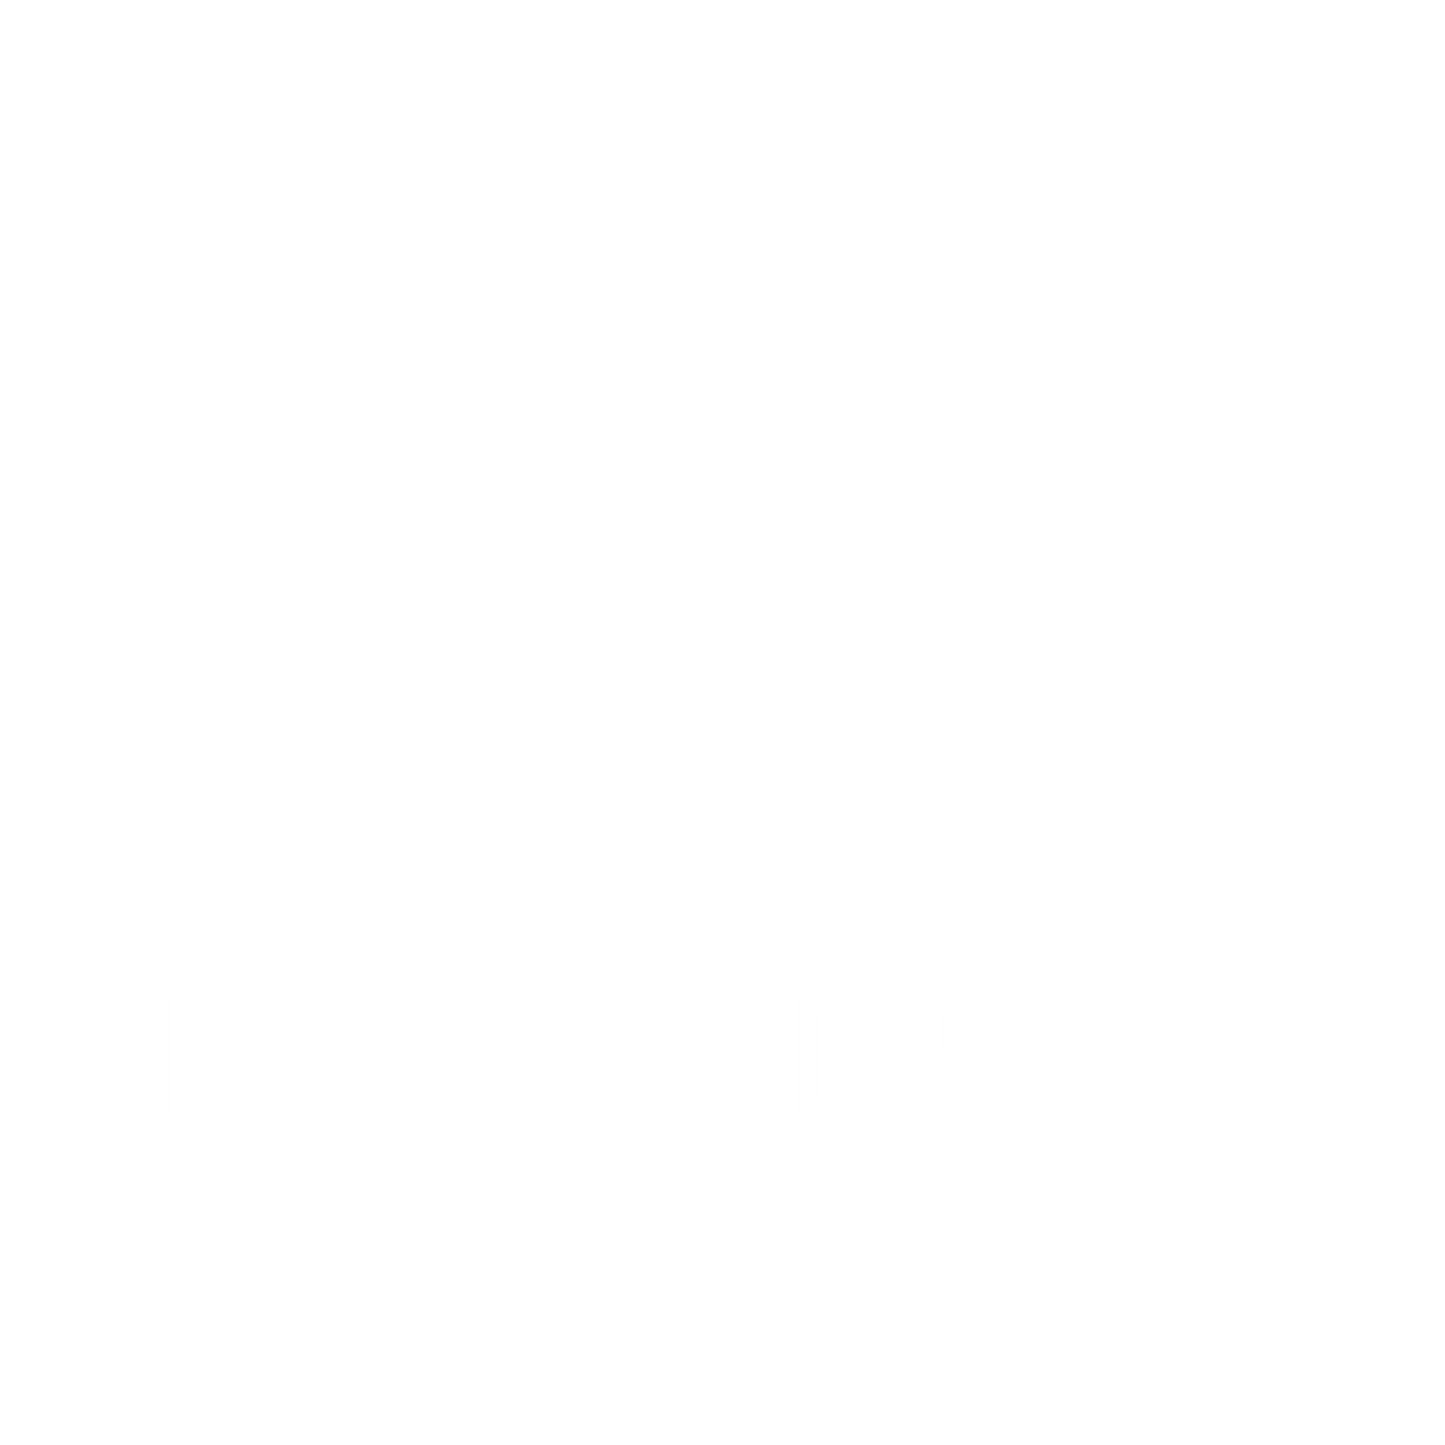 Dog & Dress